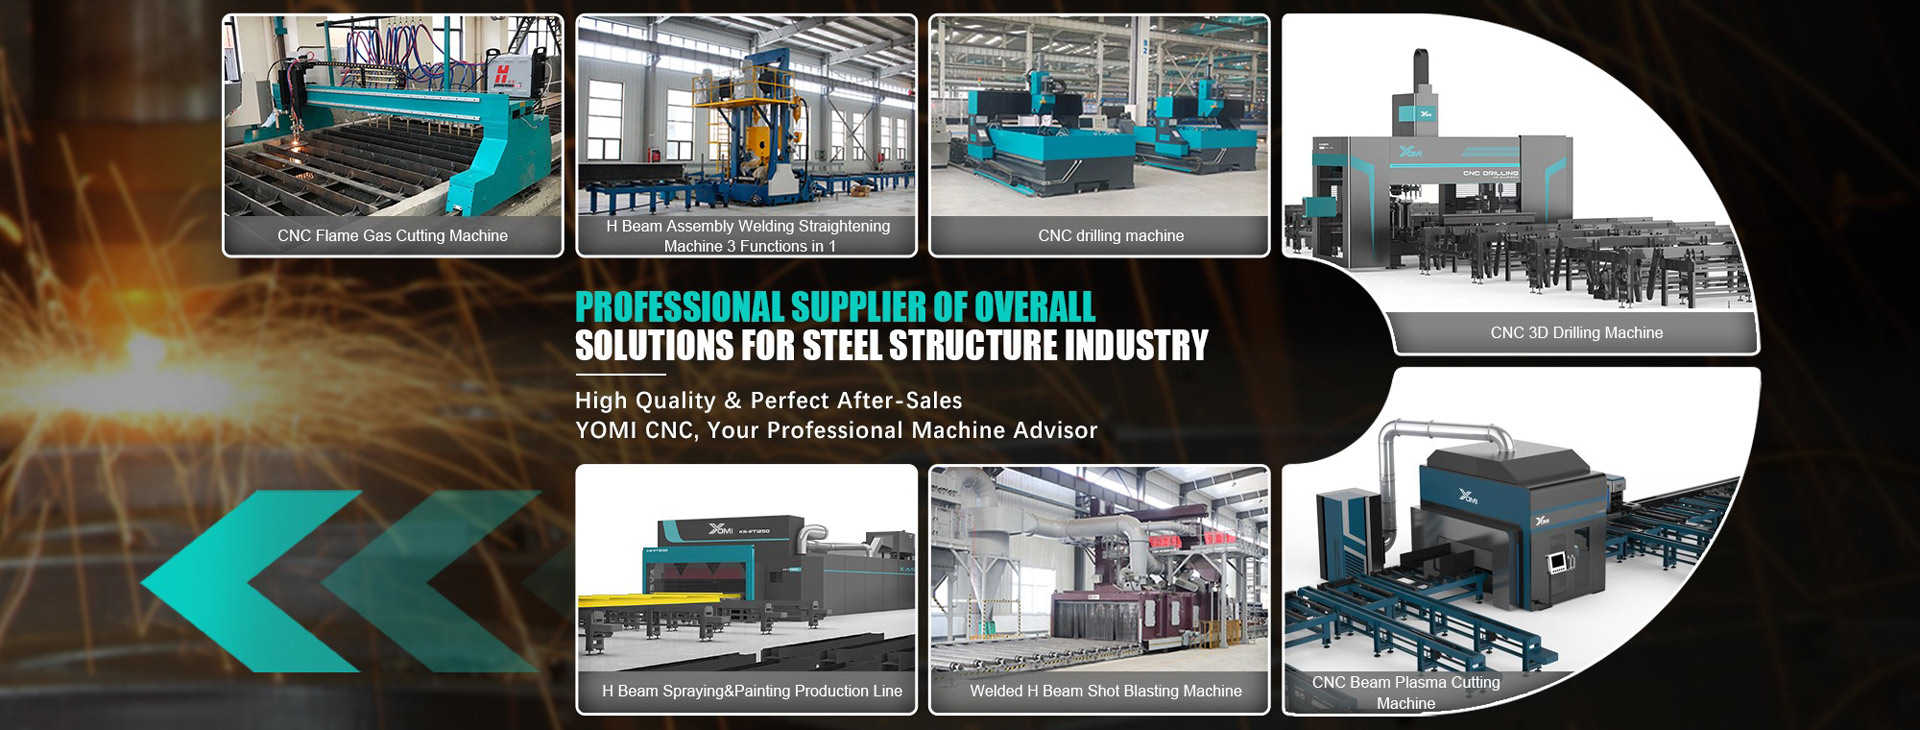 Steel structure equipment